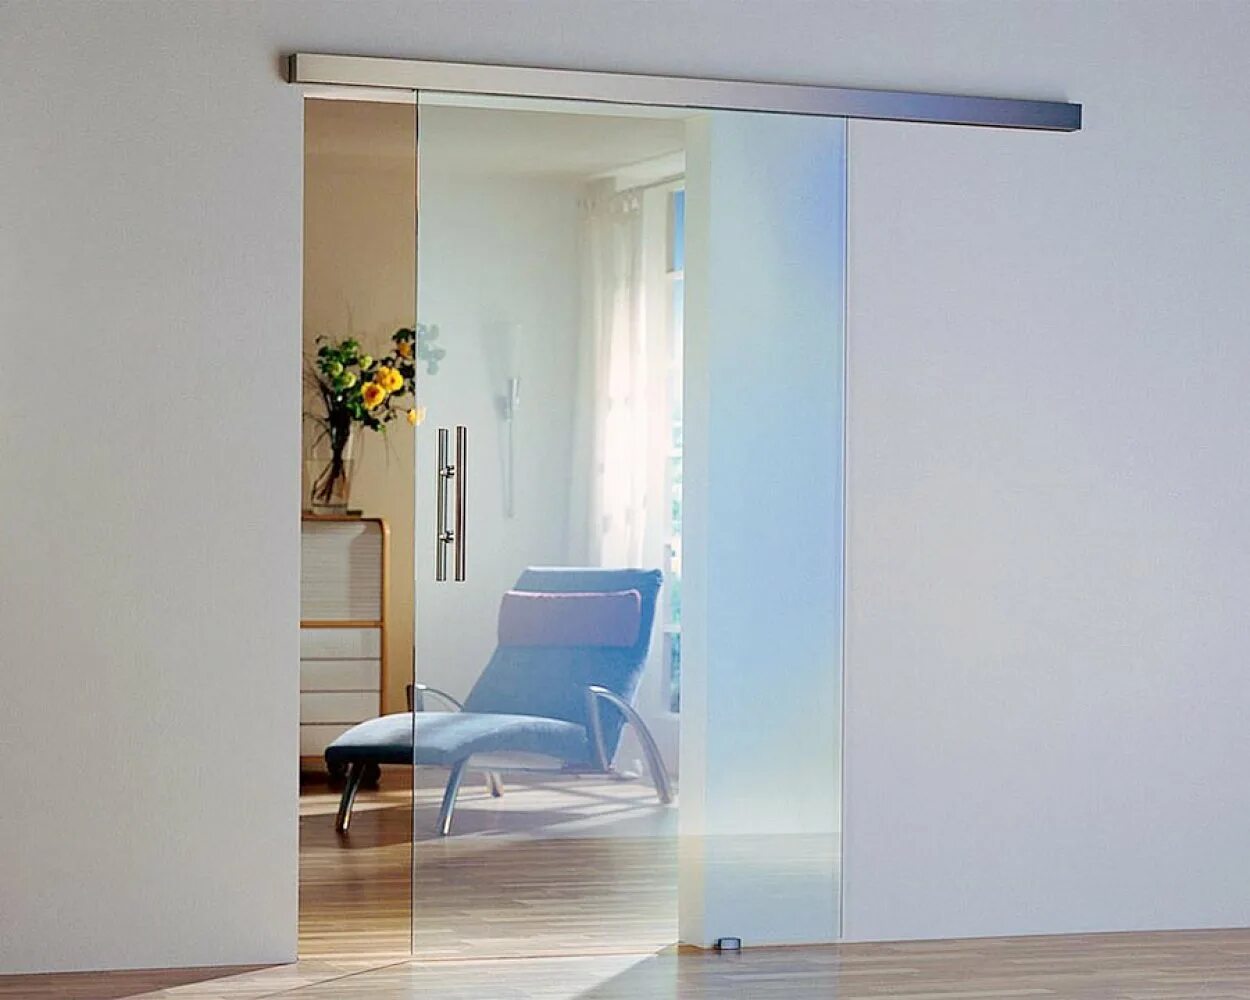 Раздвижные двери в квартире. Dorma Agile 150. W-001/Air Glass. Раздвижная система цельностеклянная. Раздвижные перегородки estet.